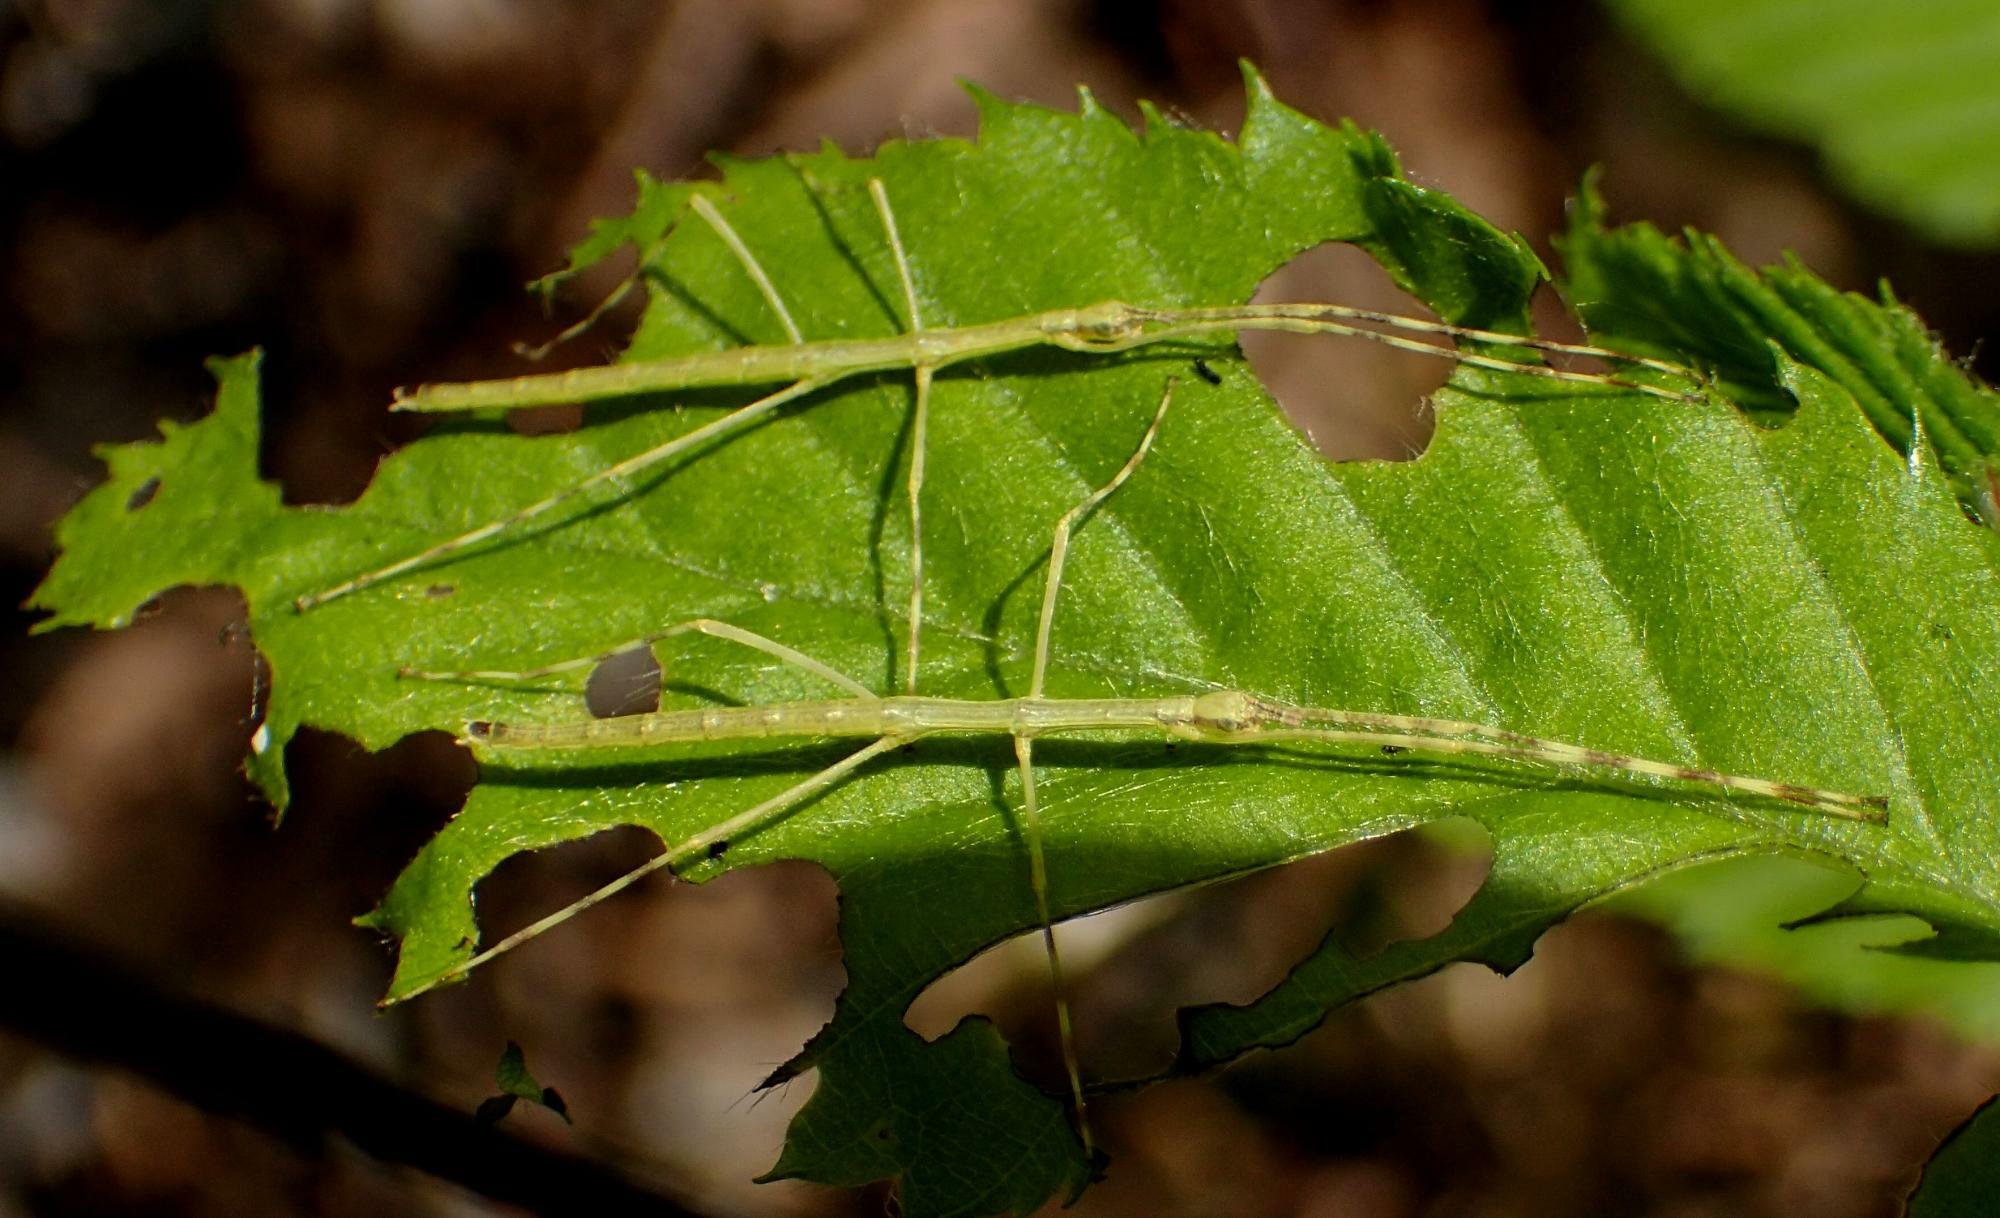 若葉の上にいるナナフシモドキ幼虫は、葉脈と見間違いそうだ。